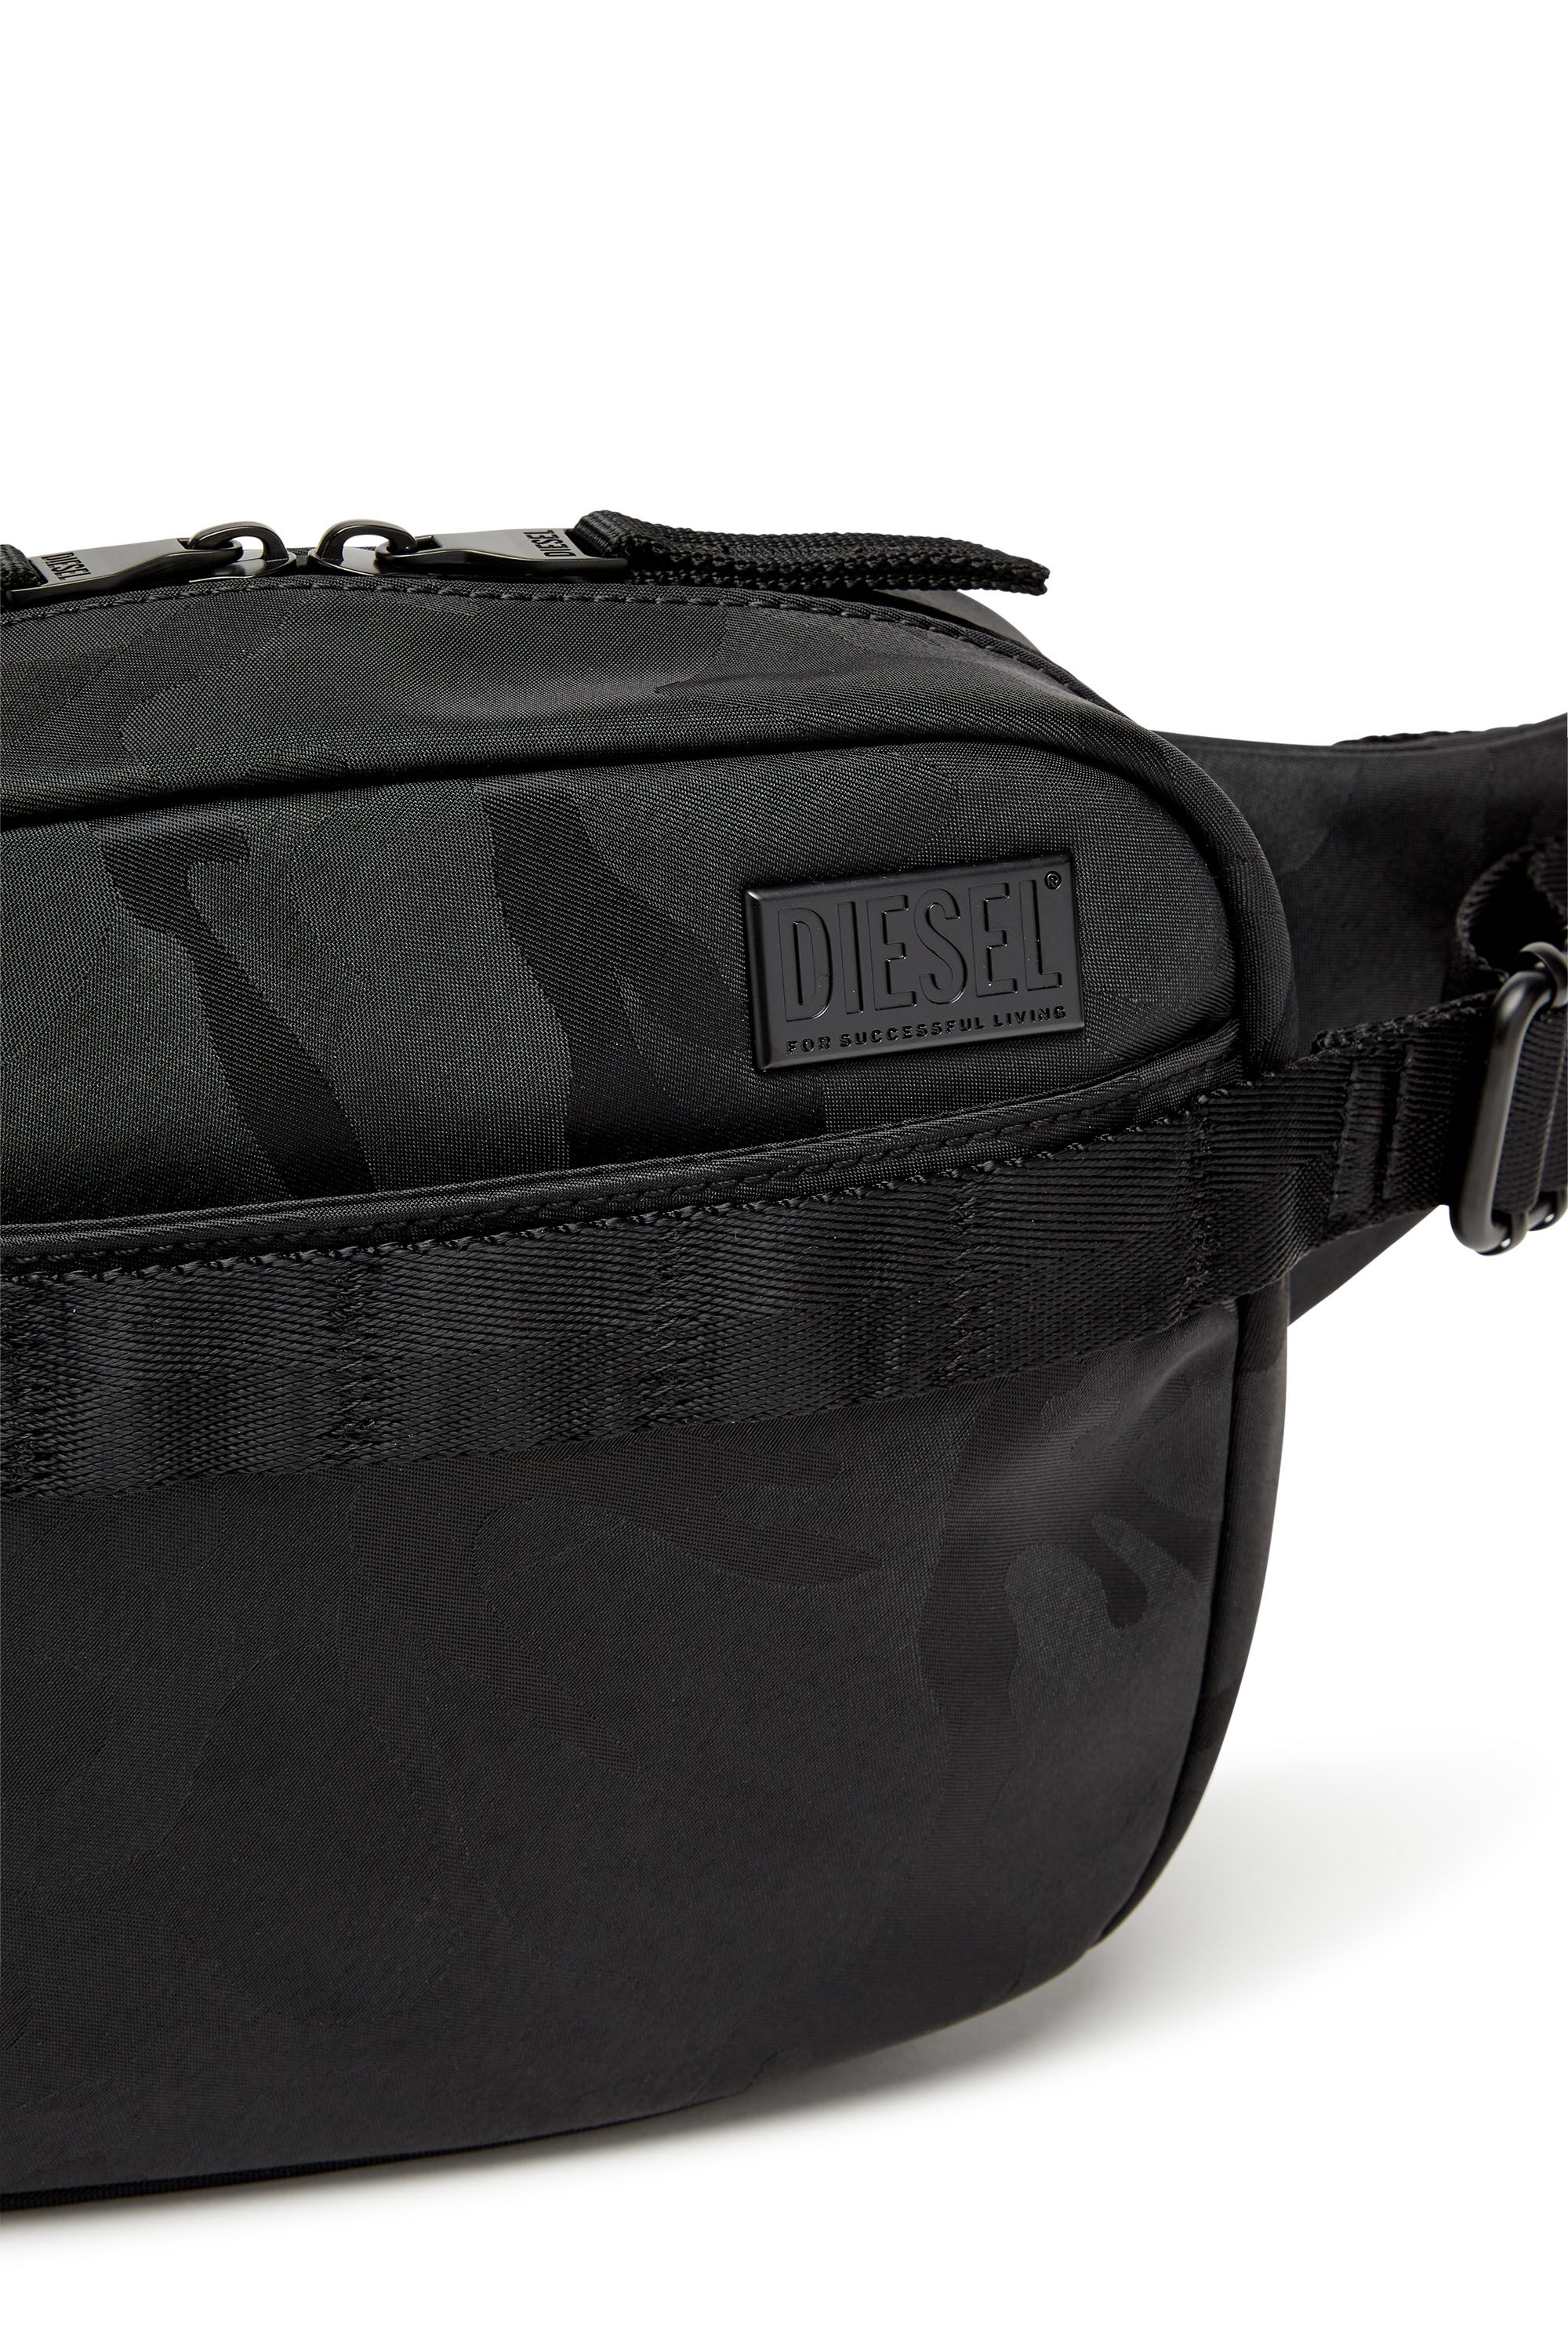 Diesel - DSRT BELTBAG, Man Dsrt-Utility belt bag in printed nylon in Black - Image 5